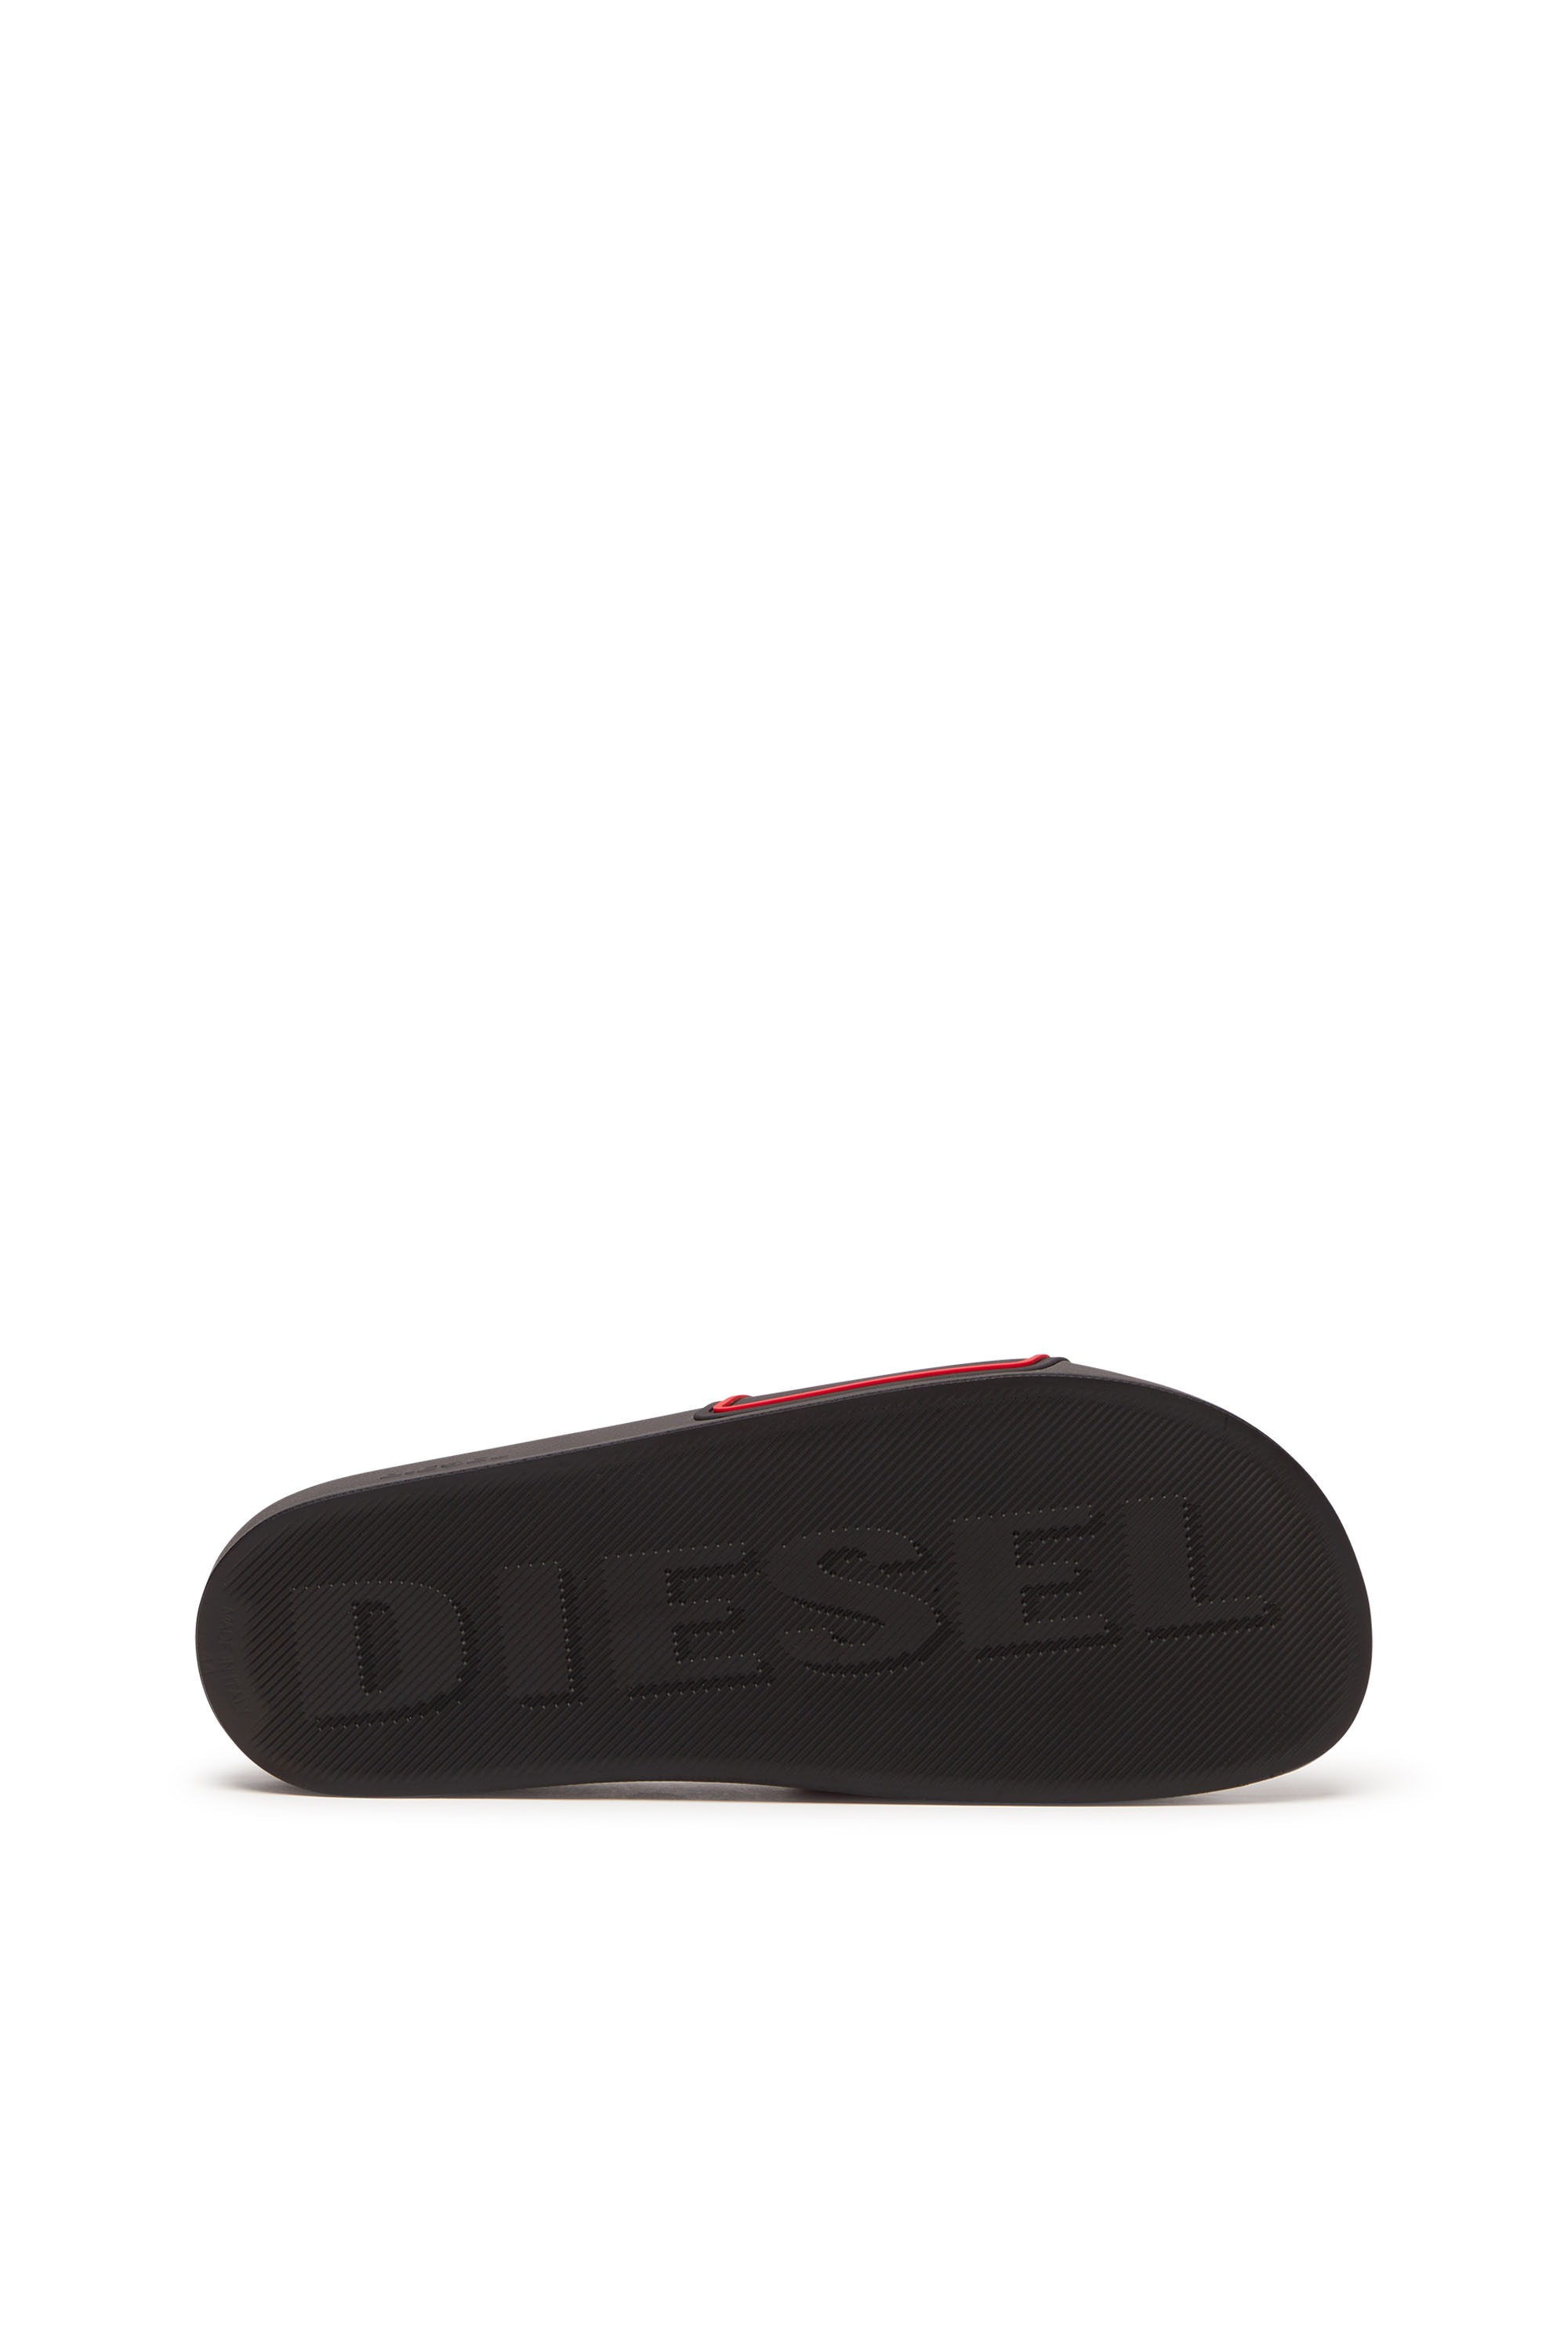 Diesel - SA-MAYEMI CC, Nero/Rosso - Image 4